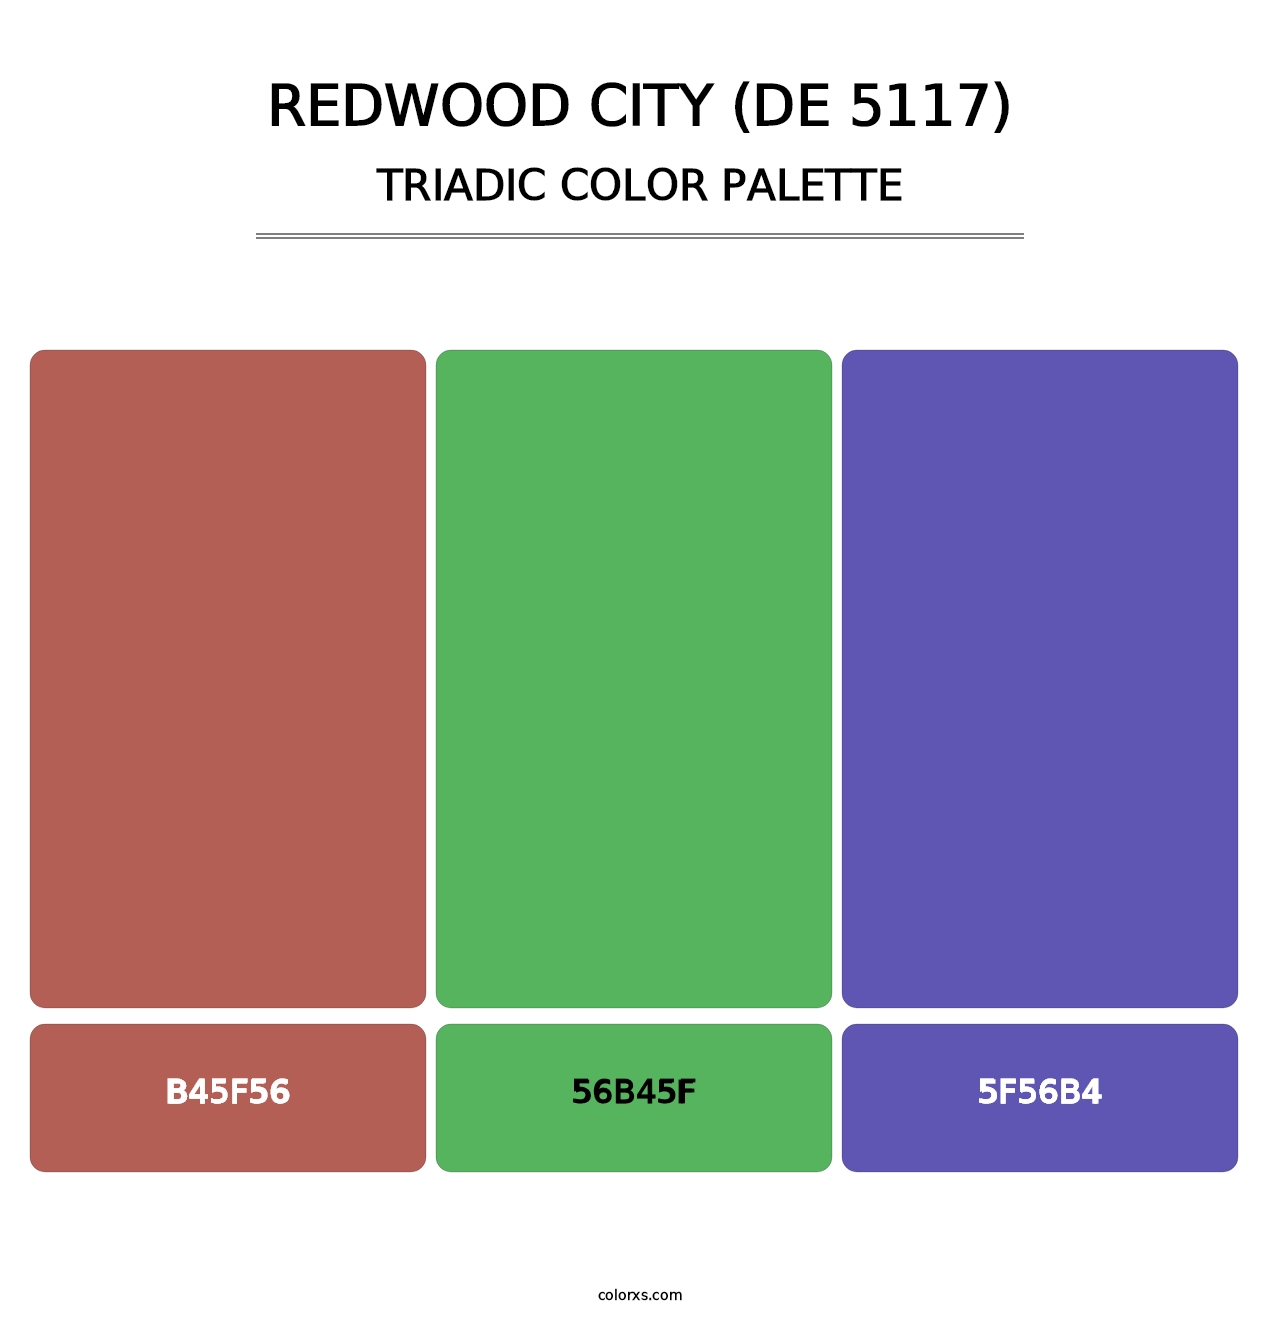 Redwood City (DE 5117) - Triadic Color Palette